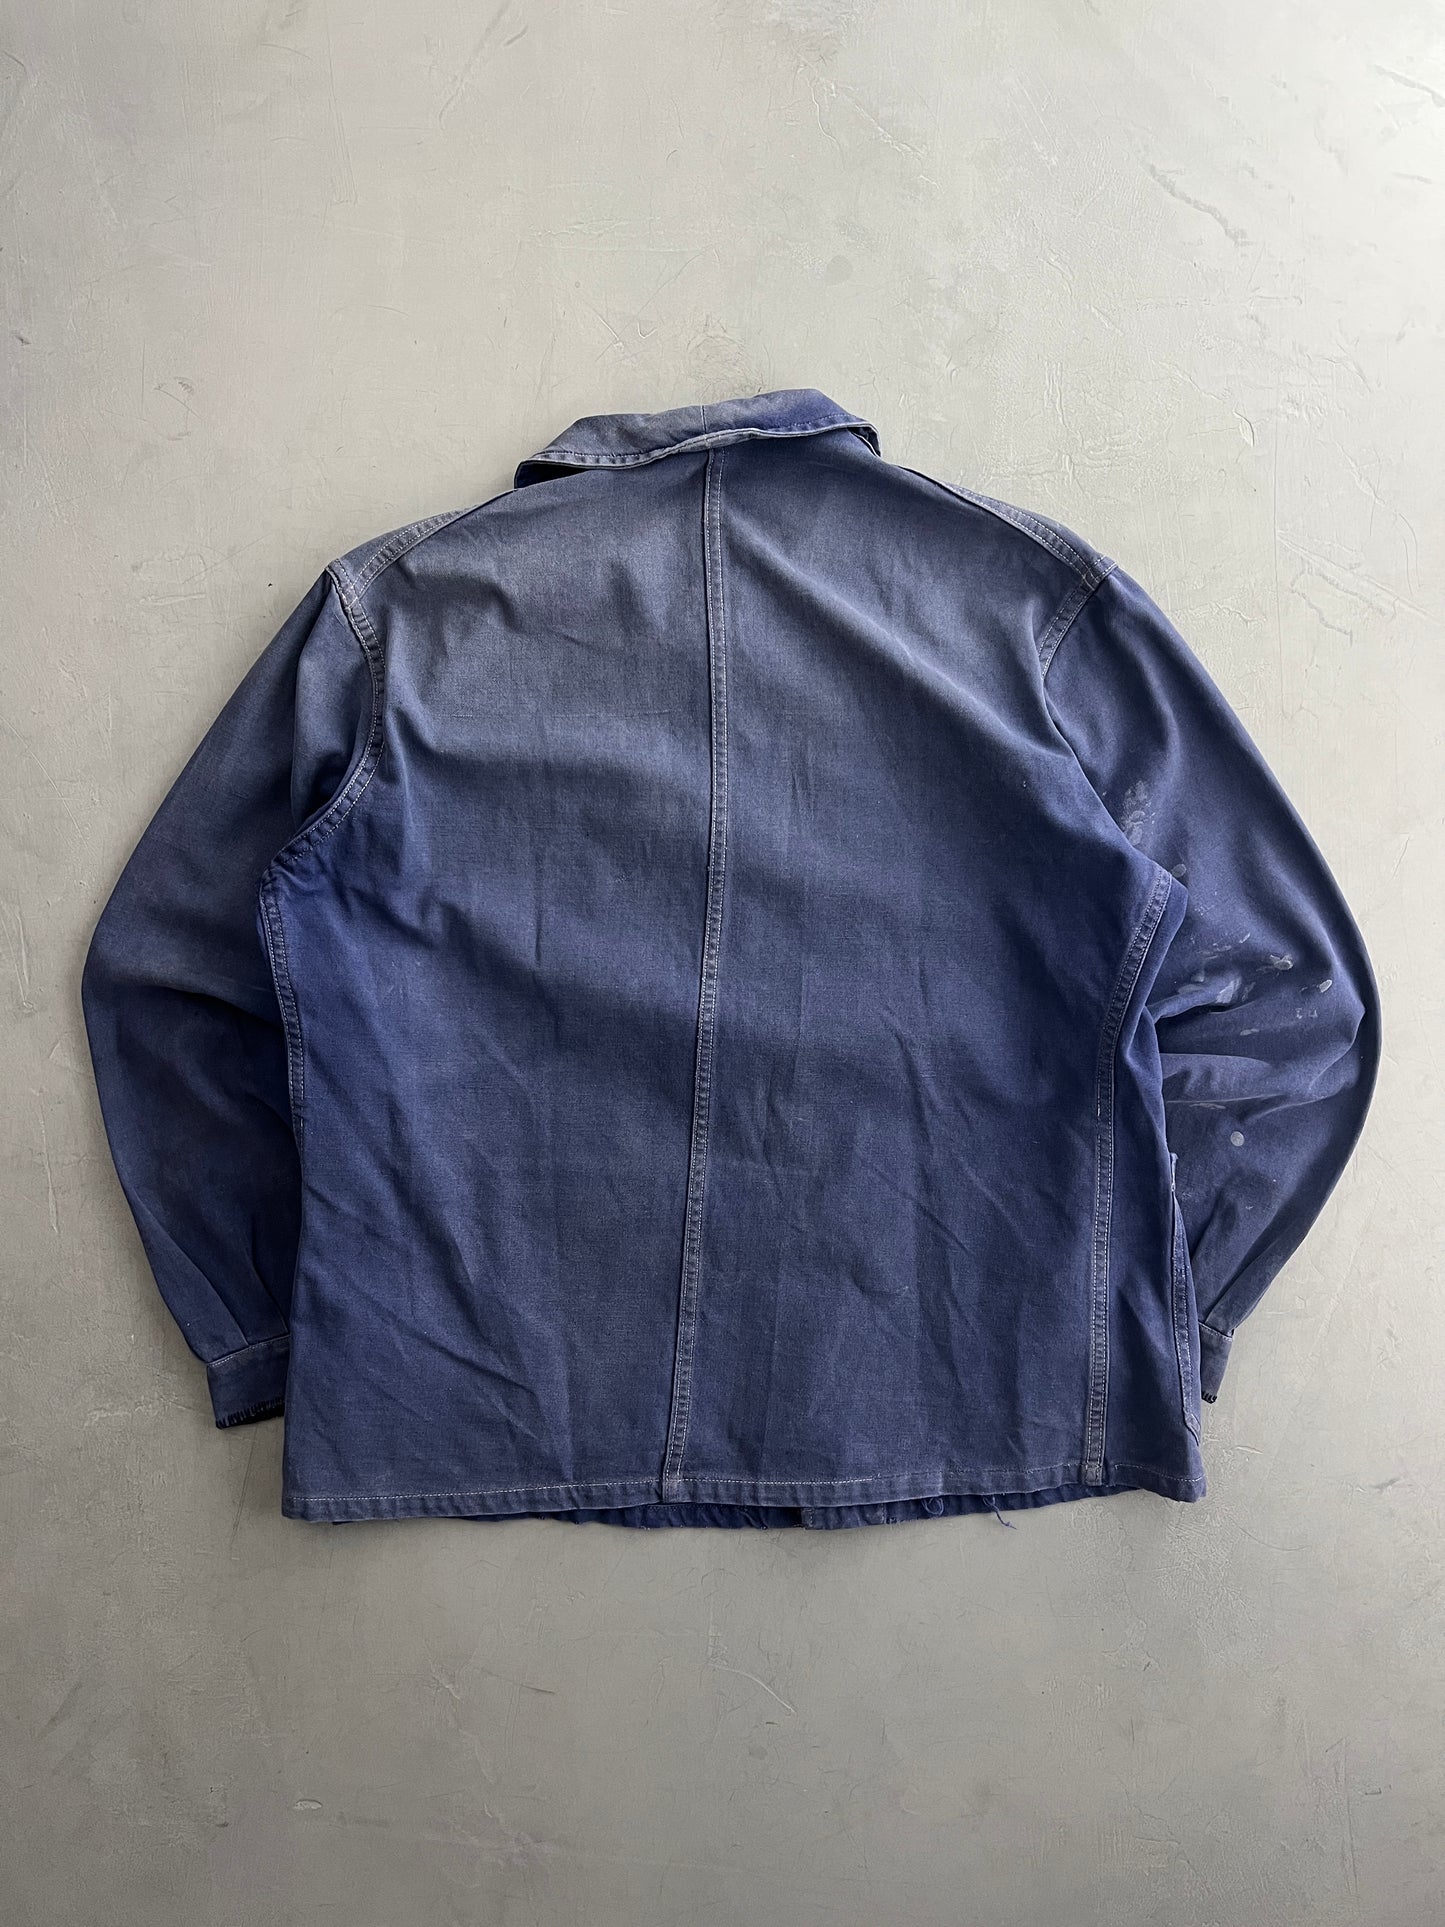 Thrashed 60's French Chore Jacket [M]